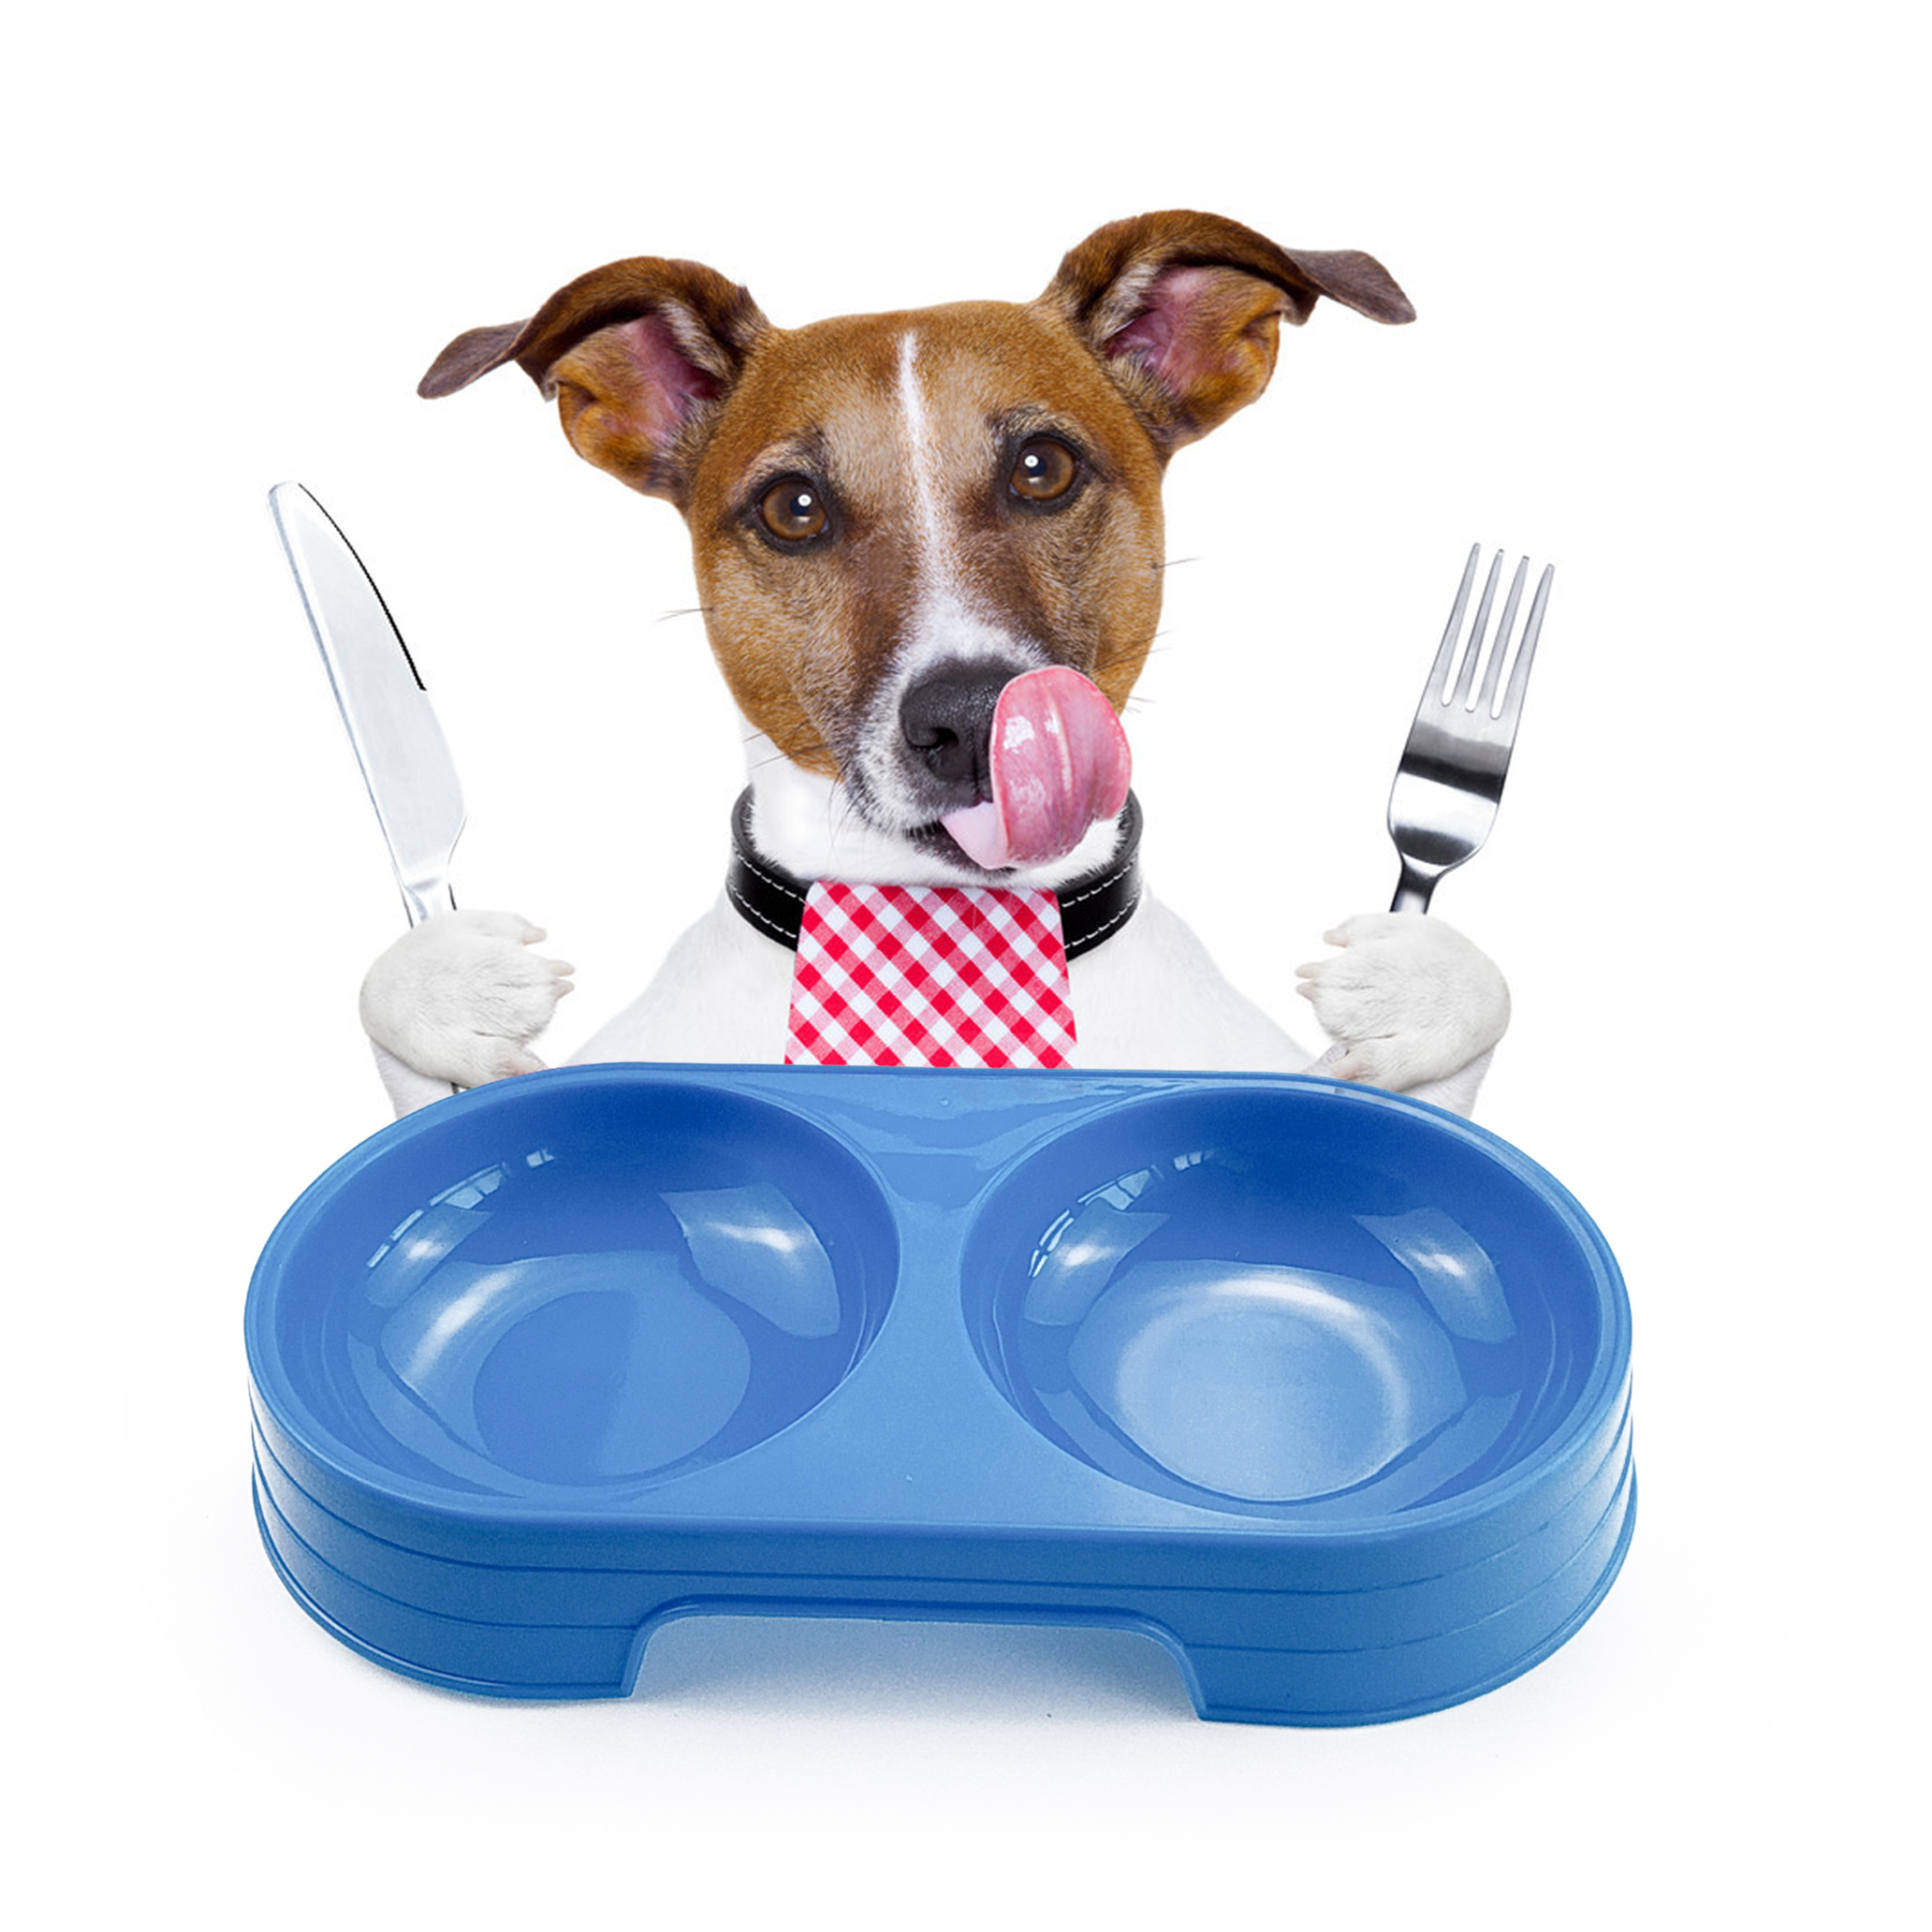 Wholesale Plastic Pet Double Bowl Dog Food Feeder Pet Accessories